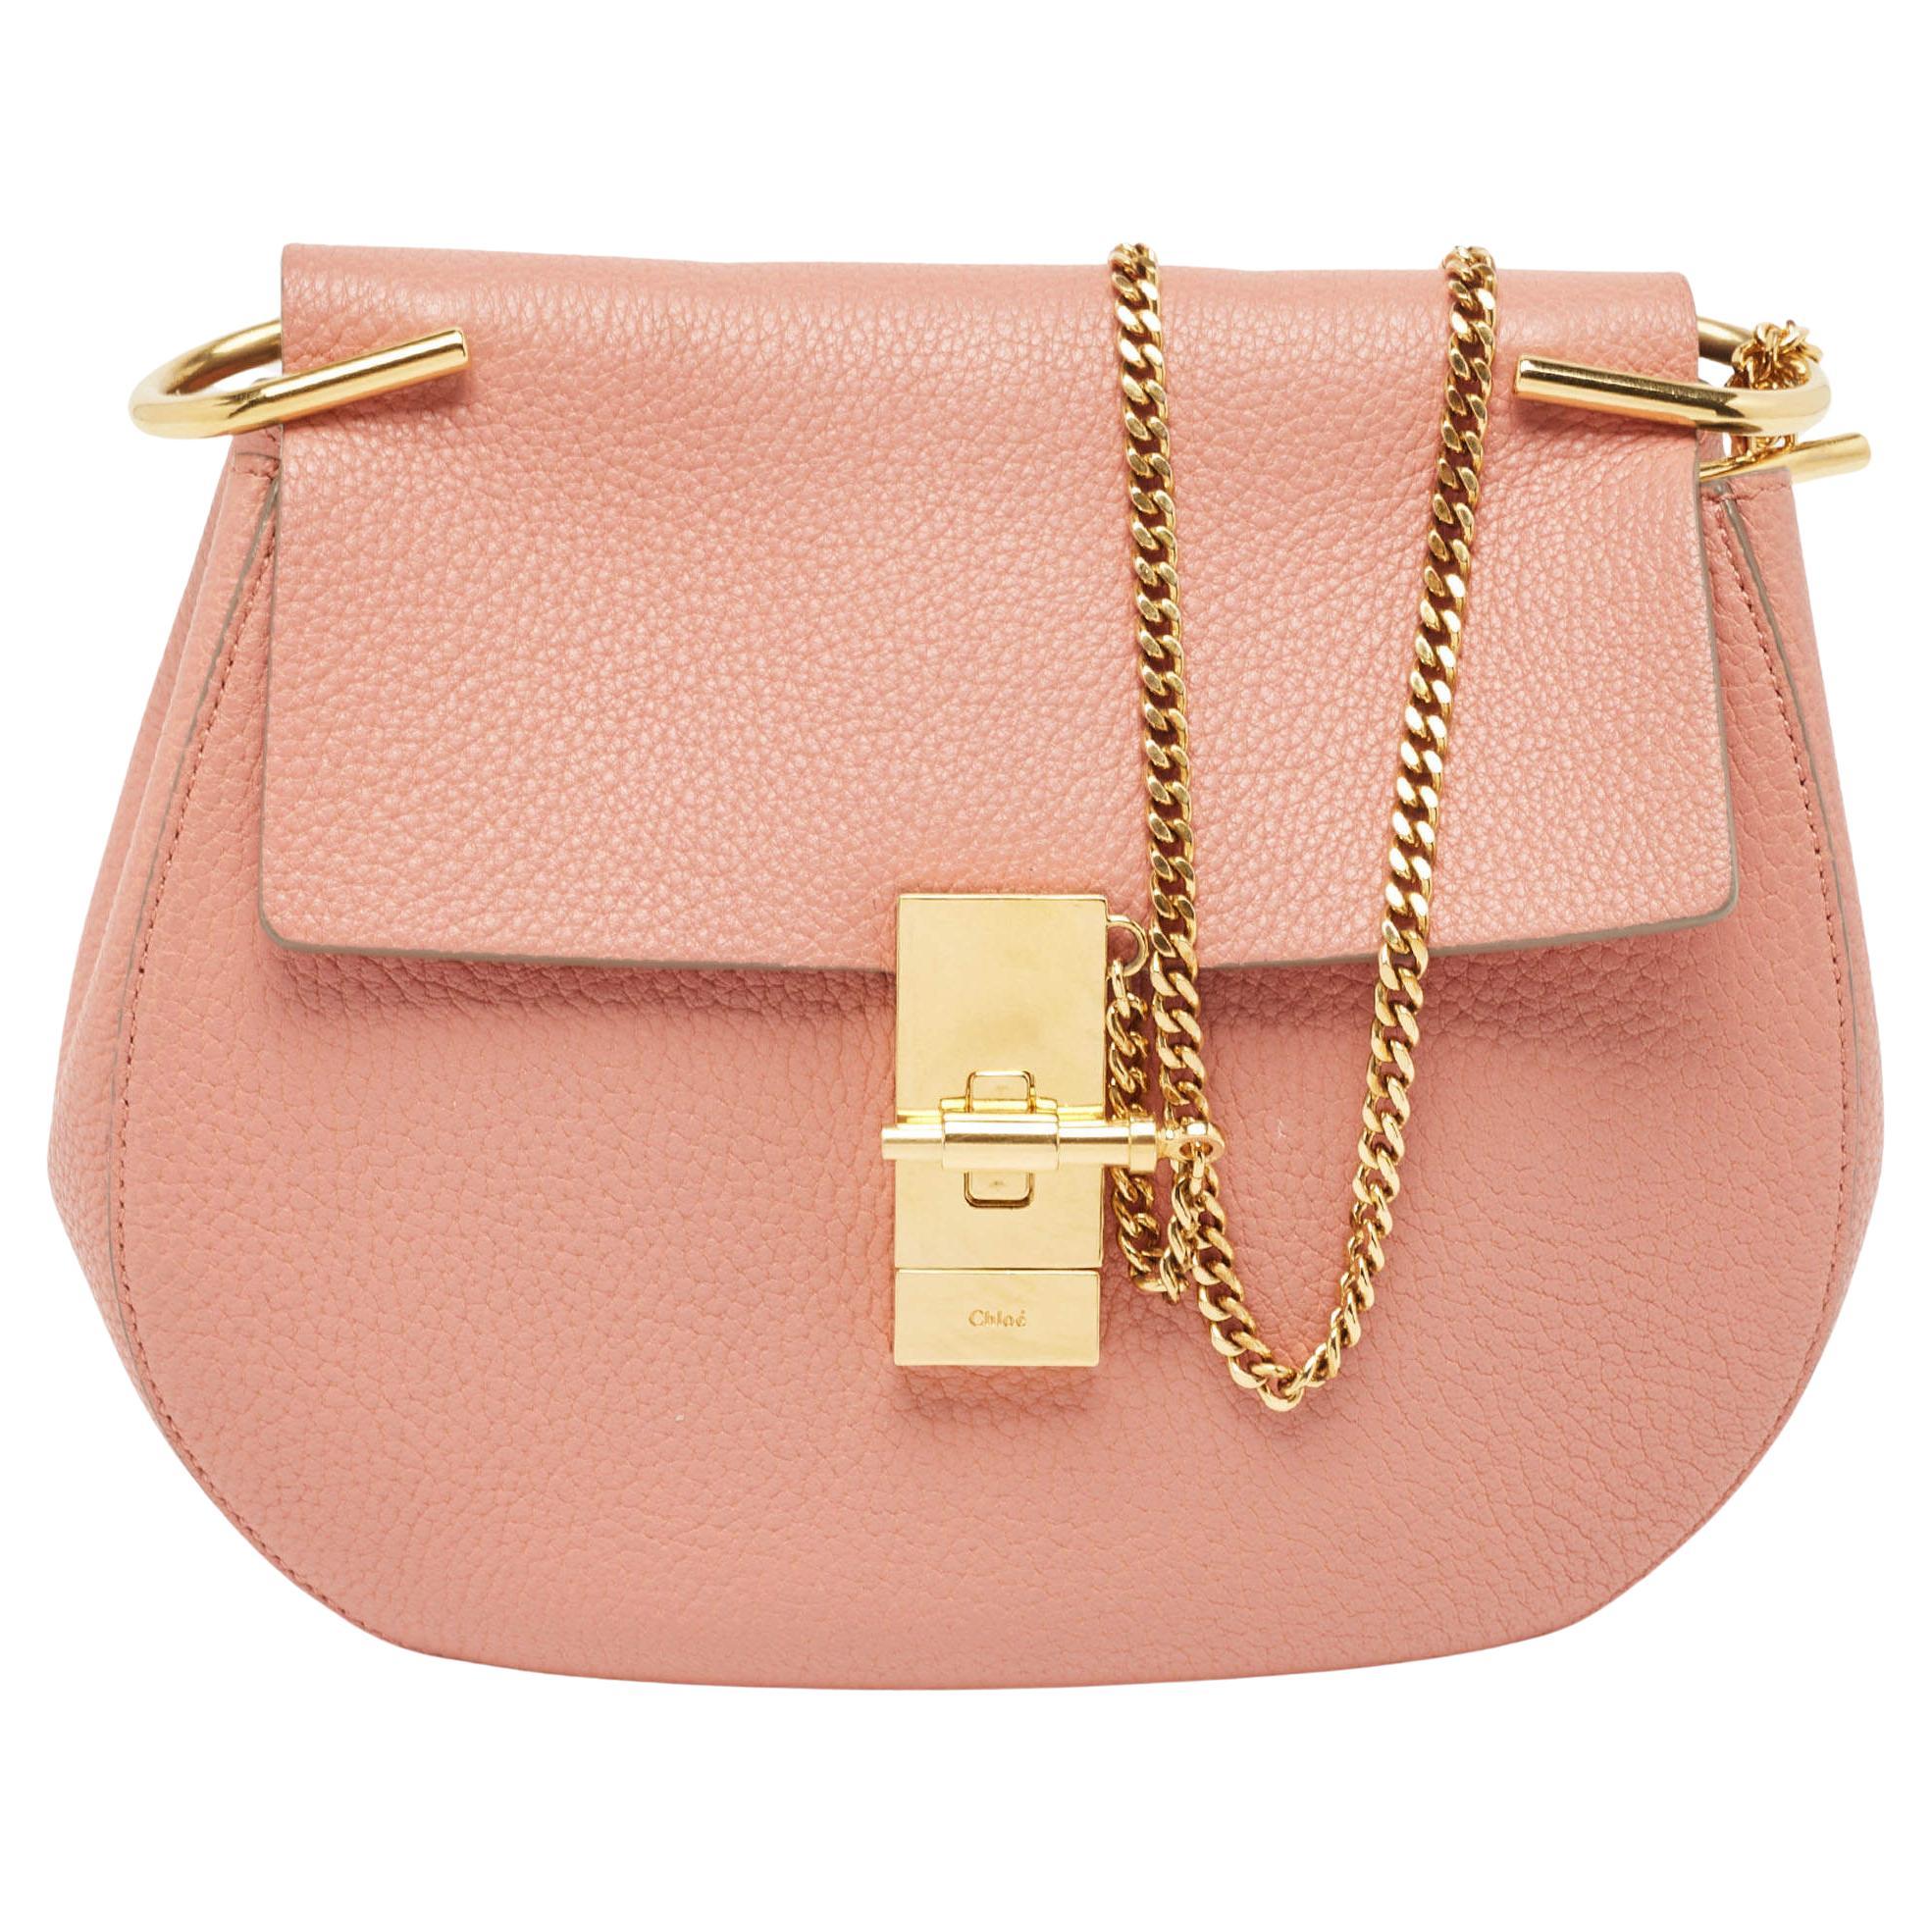 Chloe Salmon Pink Leather Medium Drew Shoulder Bag For Sale